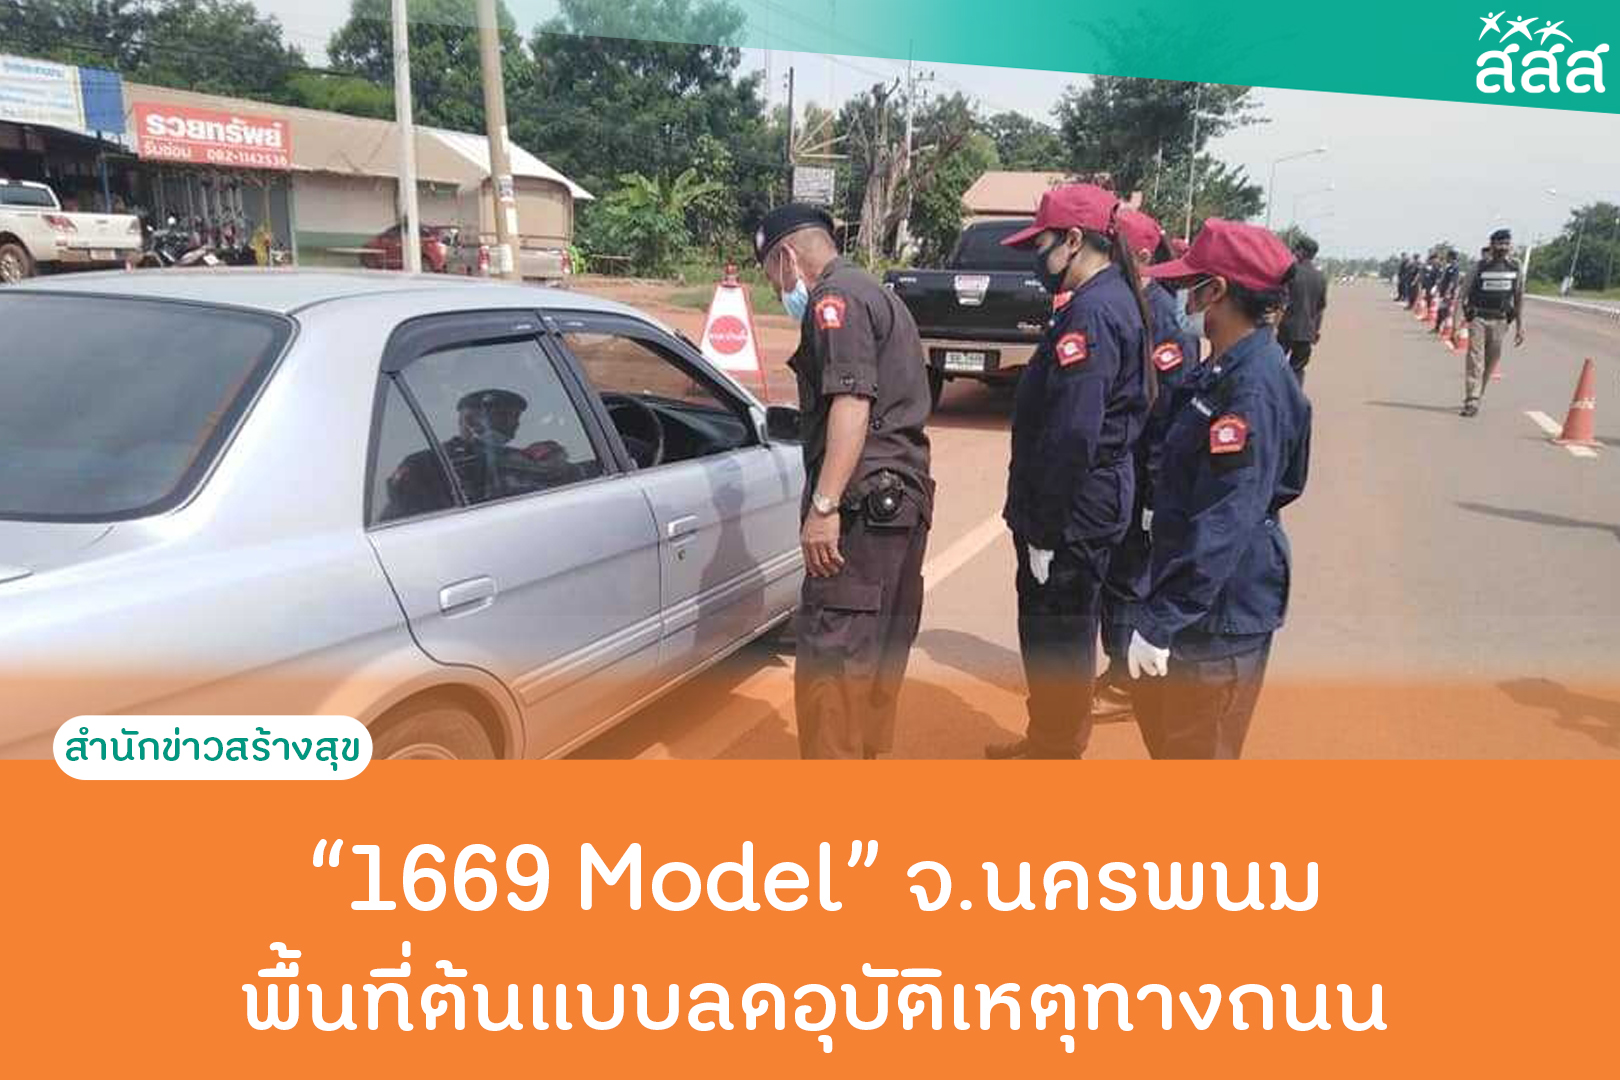 1669 Model จ.นครพนม พื้นที่ต้นแบบลดอุบัติเหตุทางถนน thaihealth